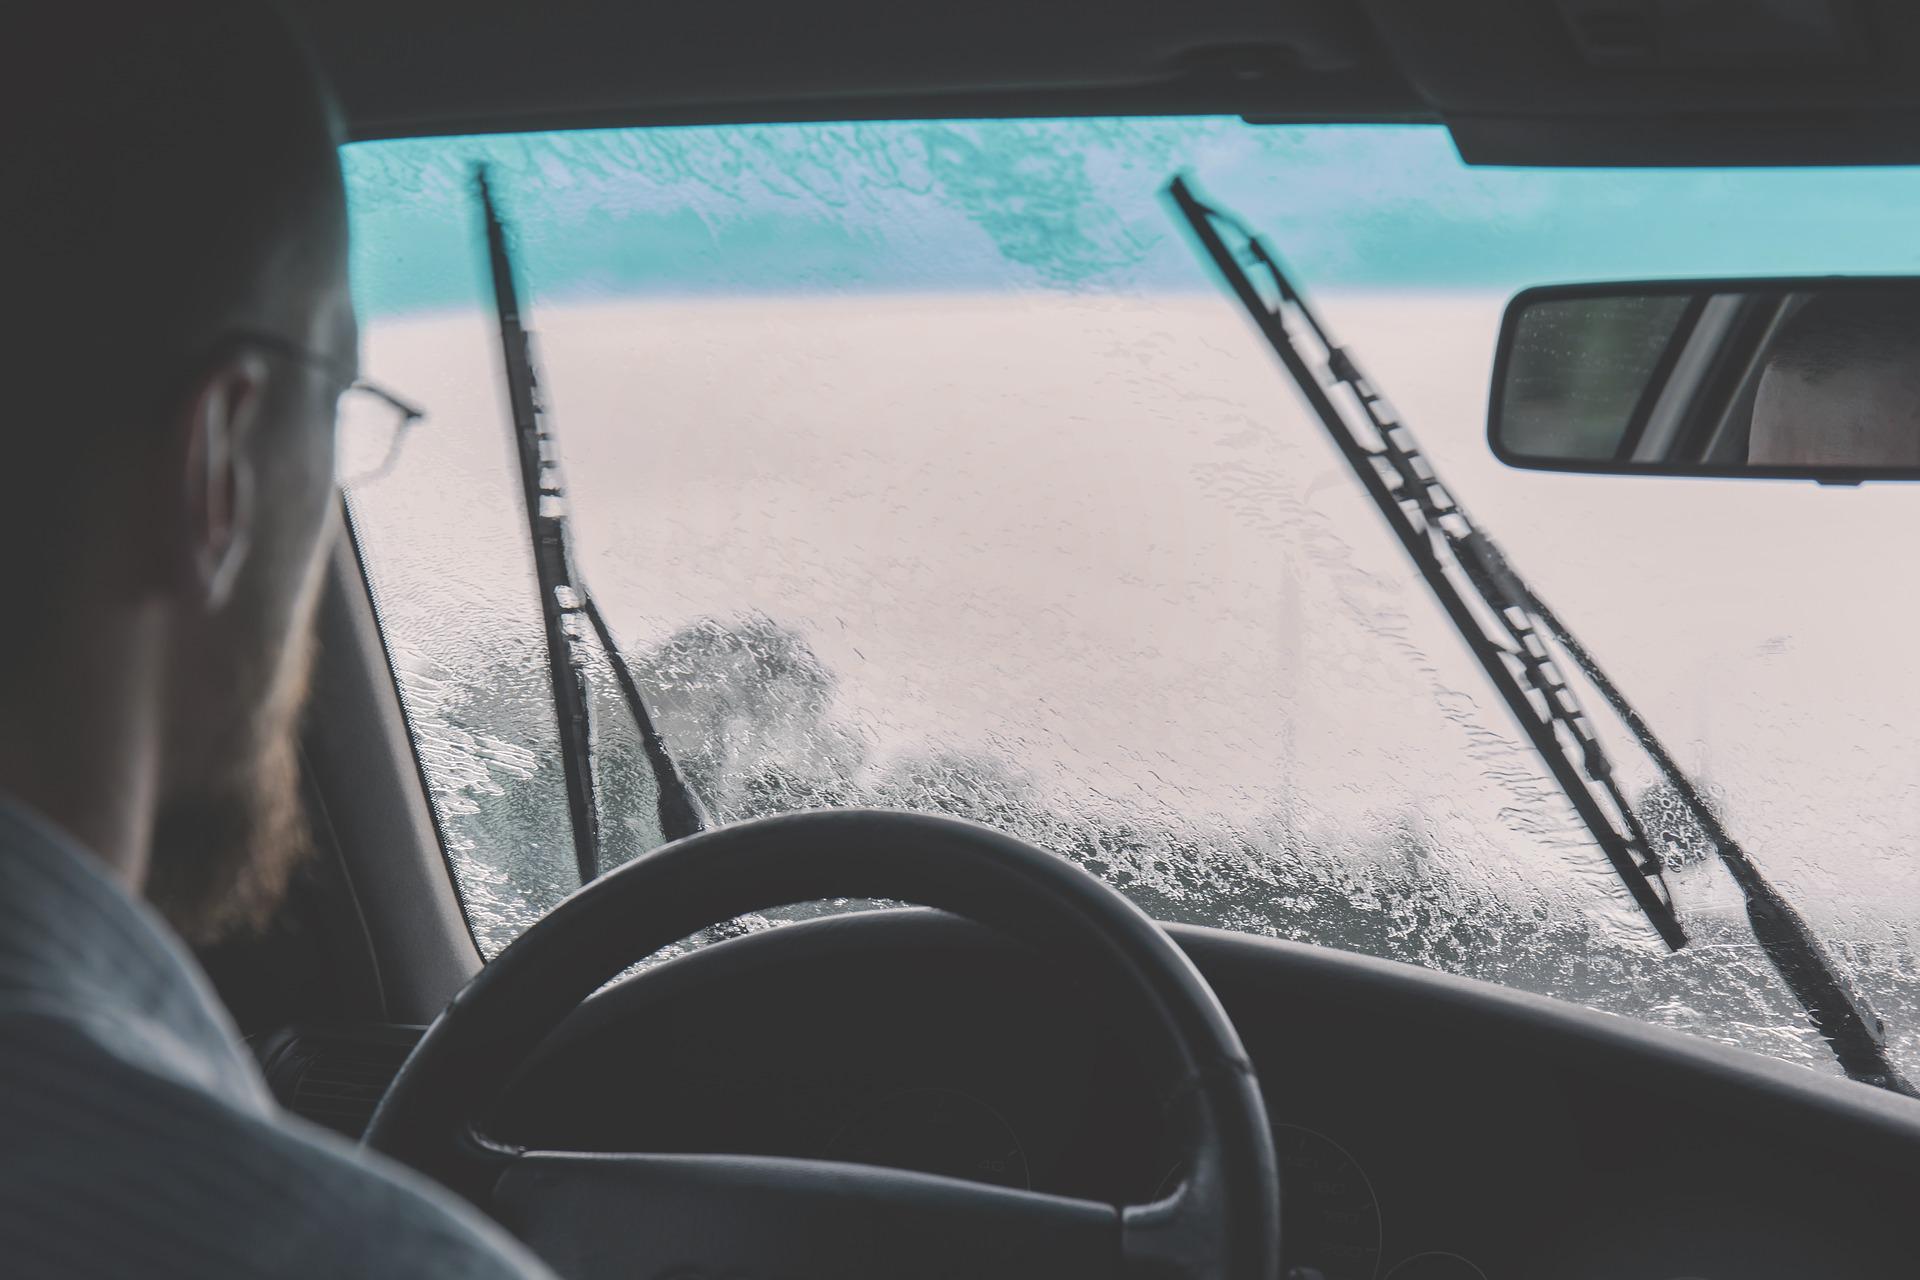 2014 ford taurus windshield wipers won't turn off